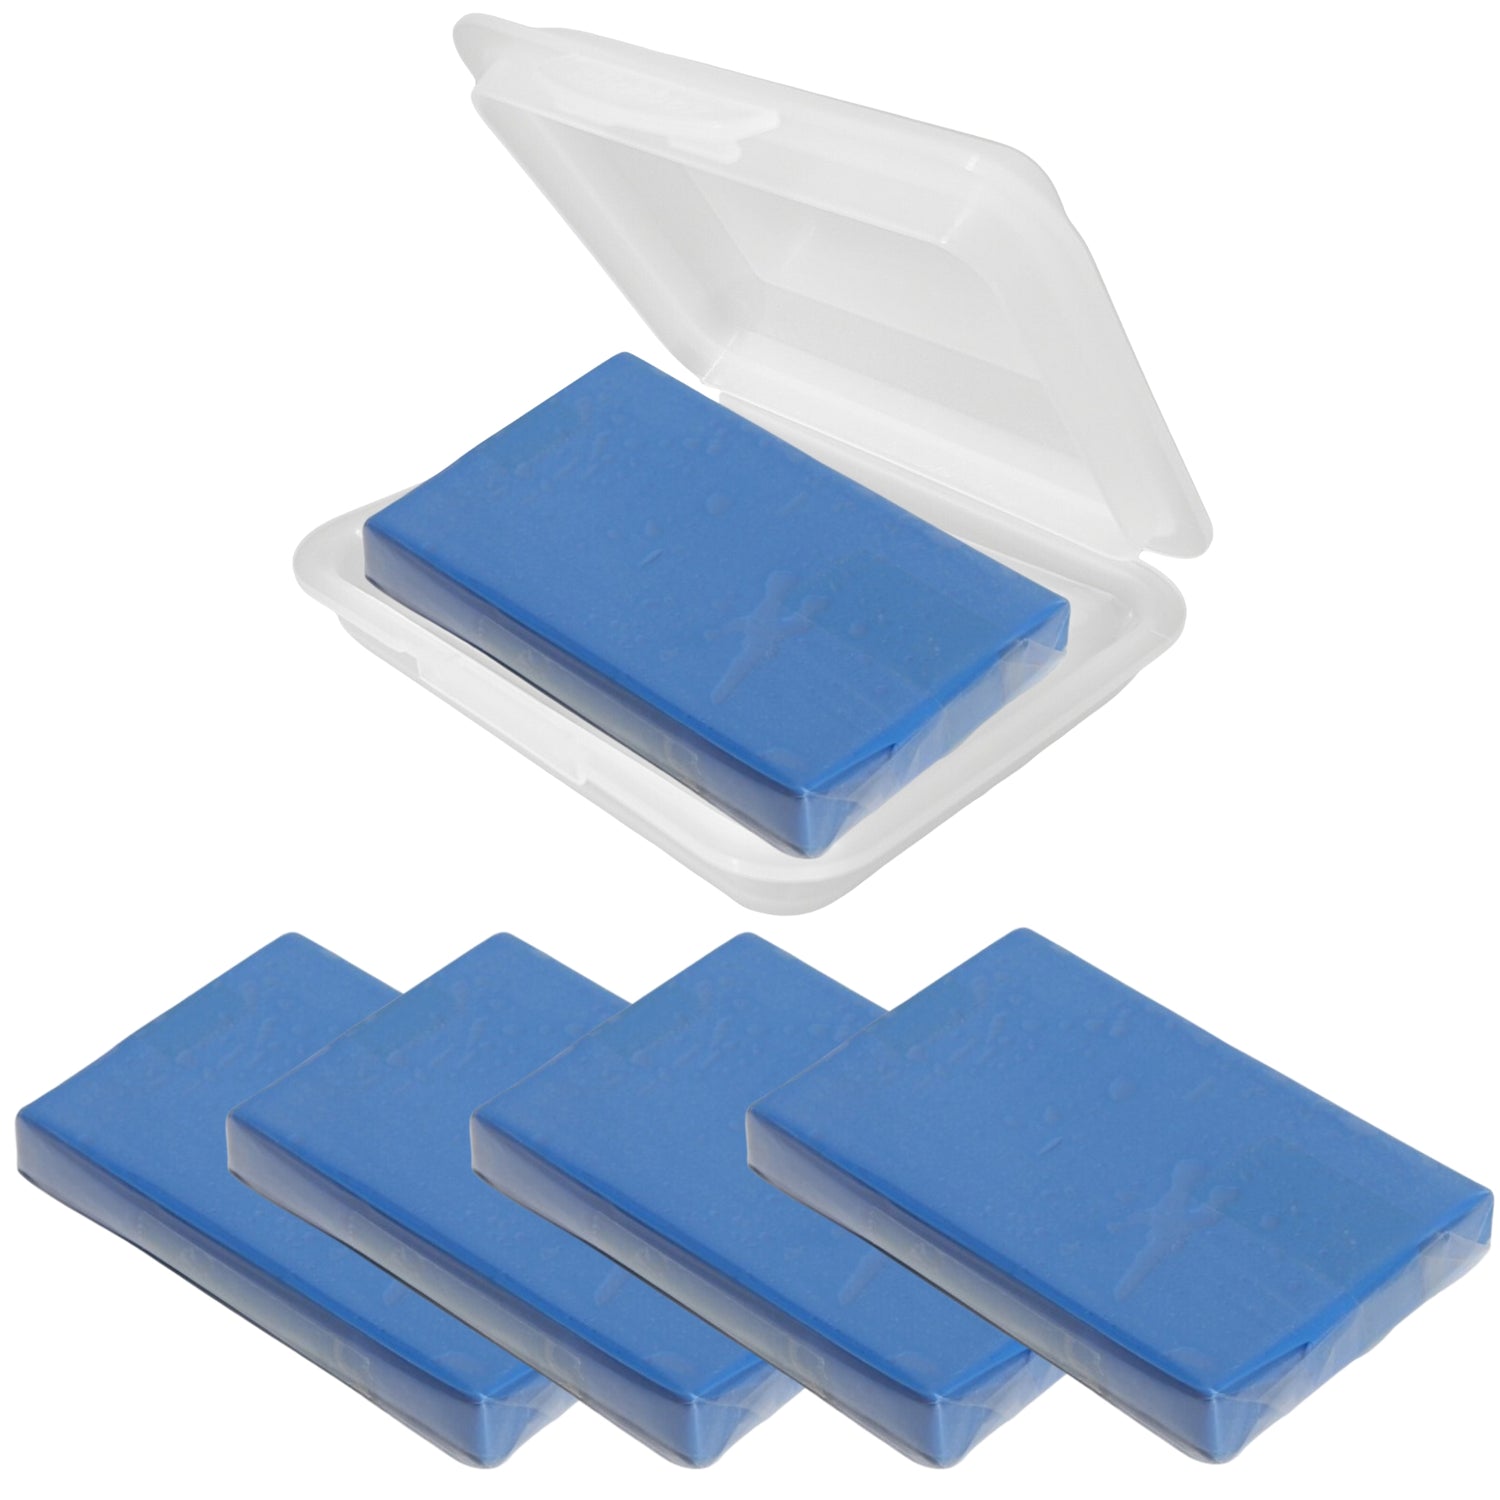 Reinigungsknete Polierknete Lackreinigungsknete Lackreiniger BLAU 5 x 100g + 1 Aufbewahrungsbox